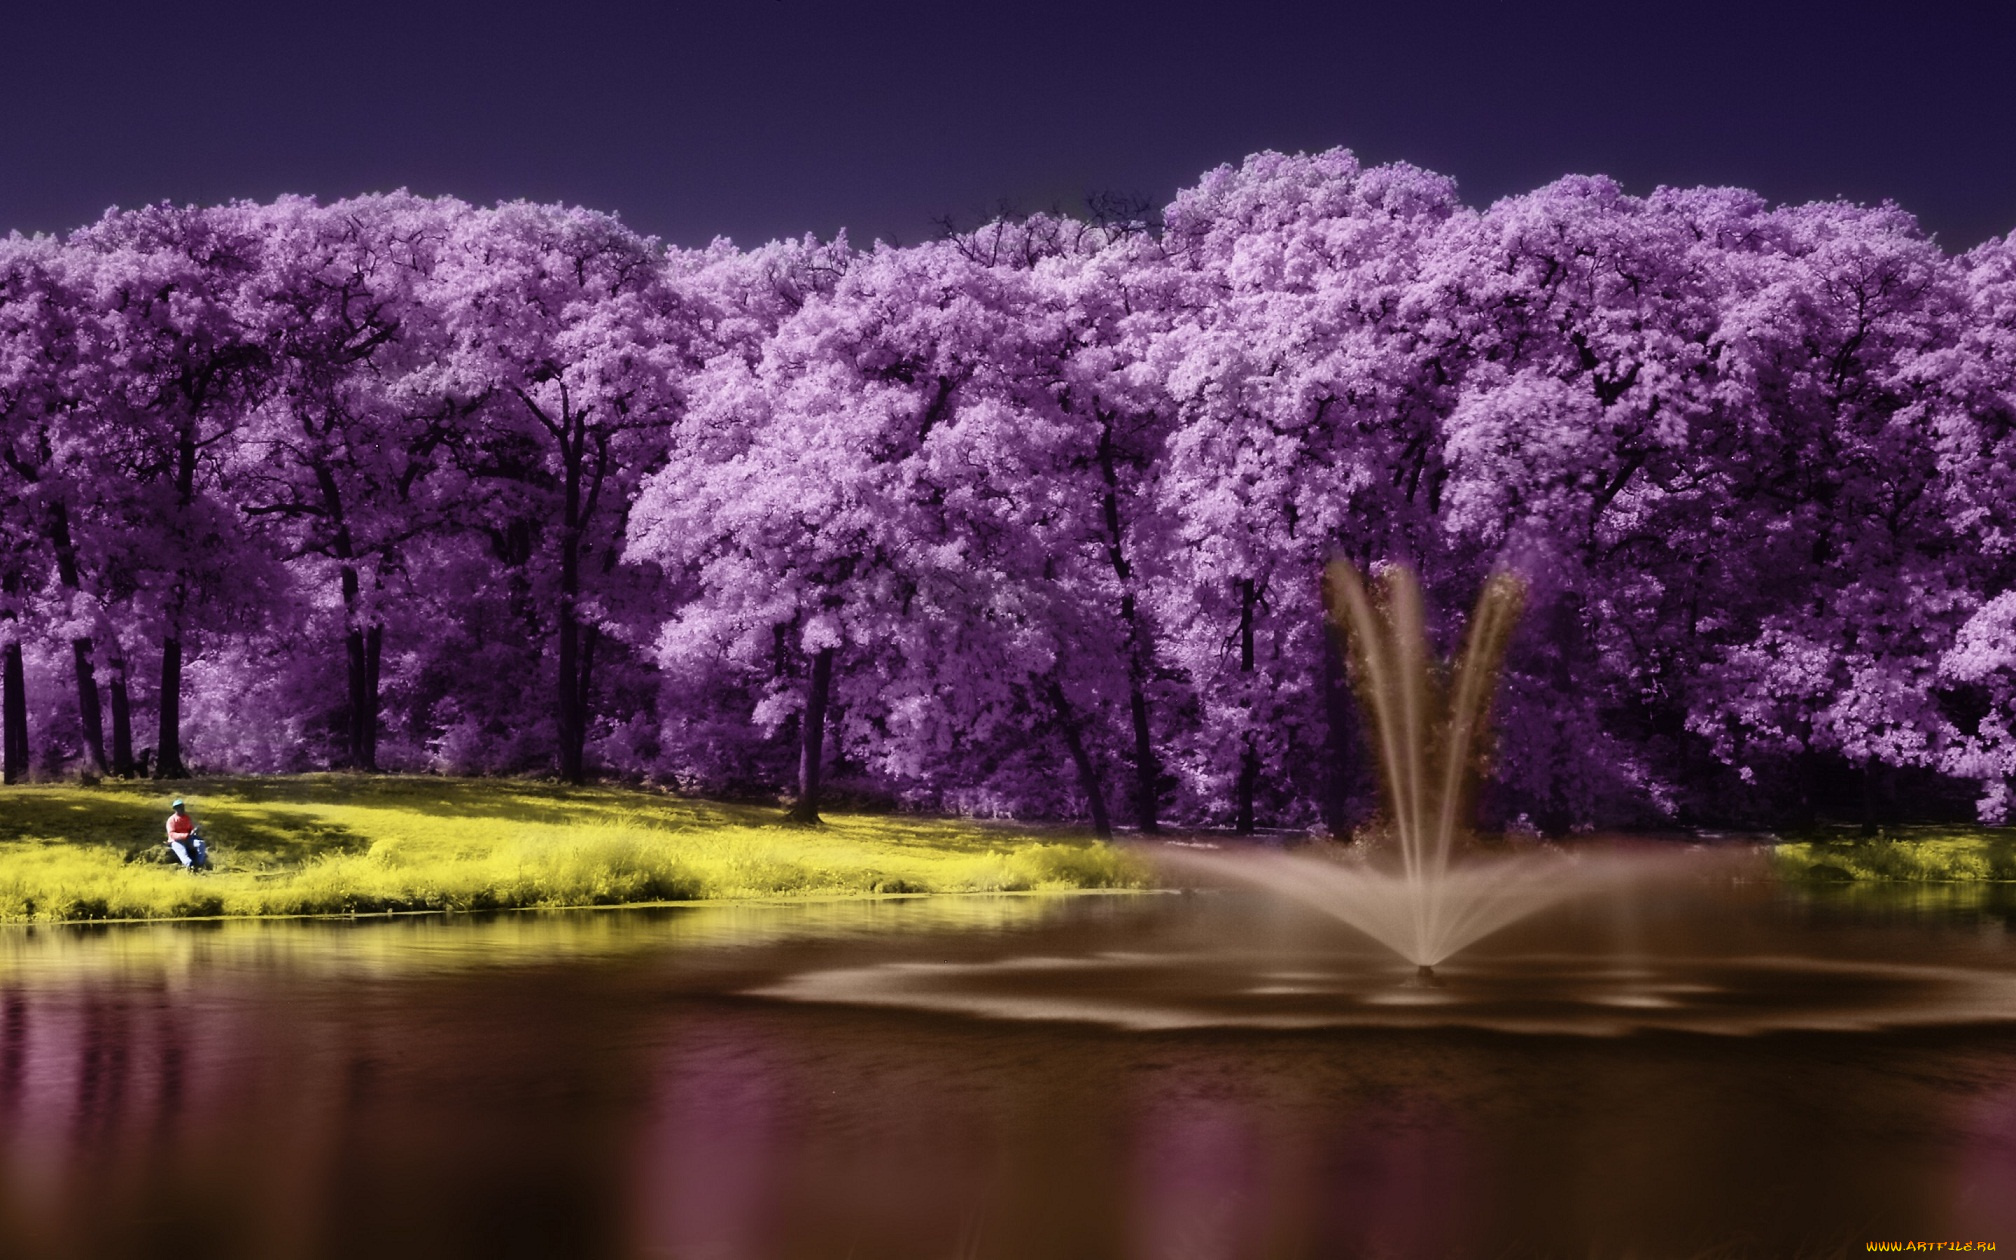 разное, компьютерный, дизайн, озеро, дерево, scenery, lake, фиолетовый, пейзаж, purple, tree